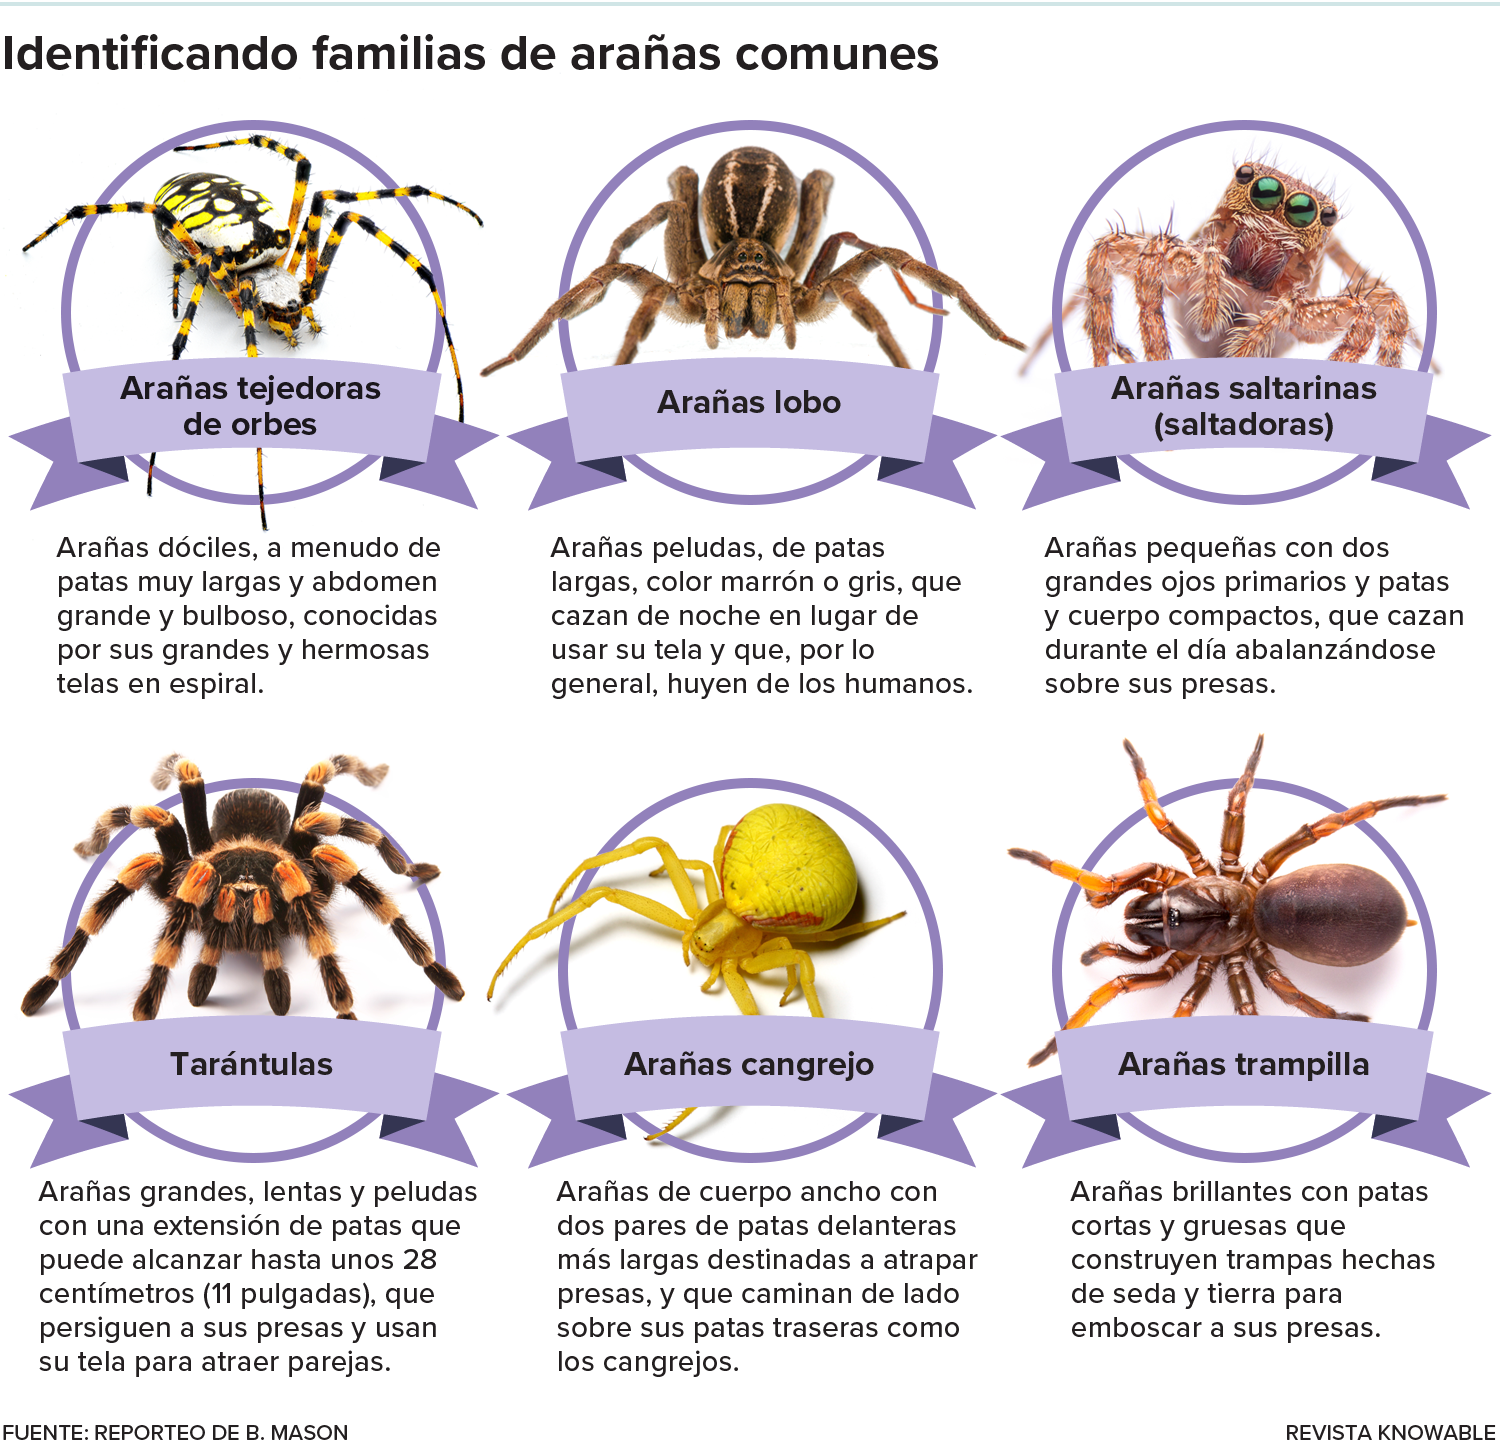 Breve resumen de seis familias de arañas, cada una con una foto representativa